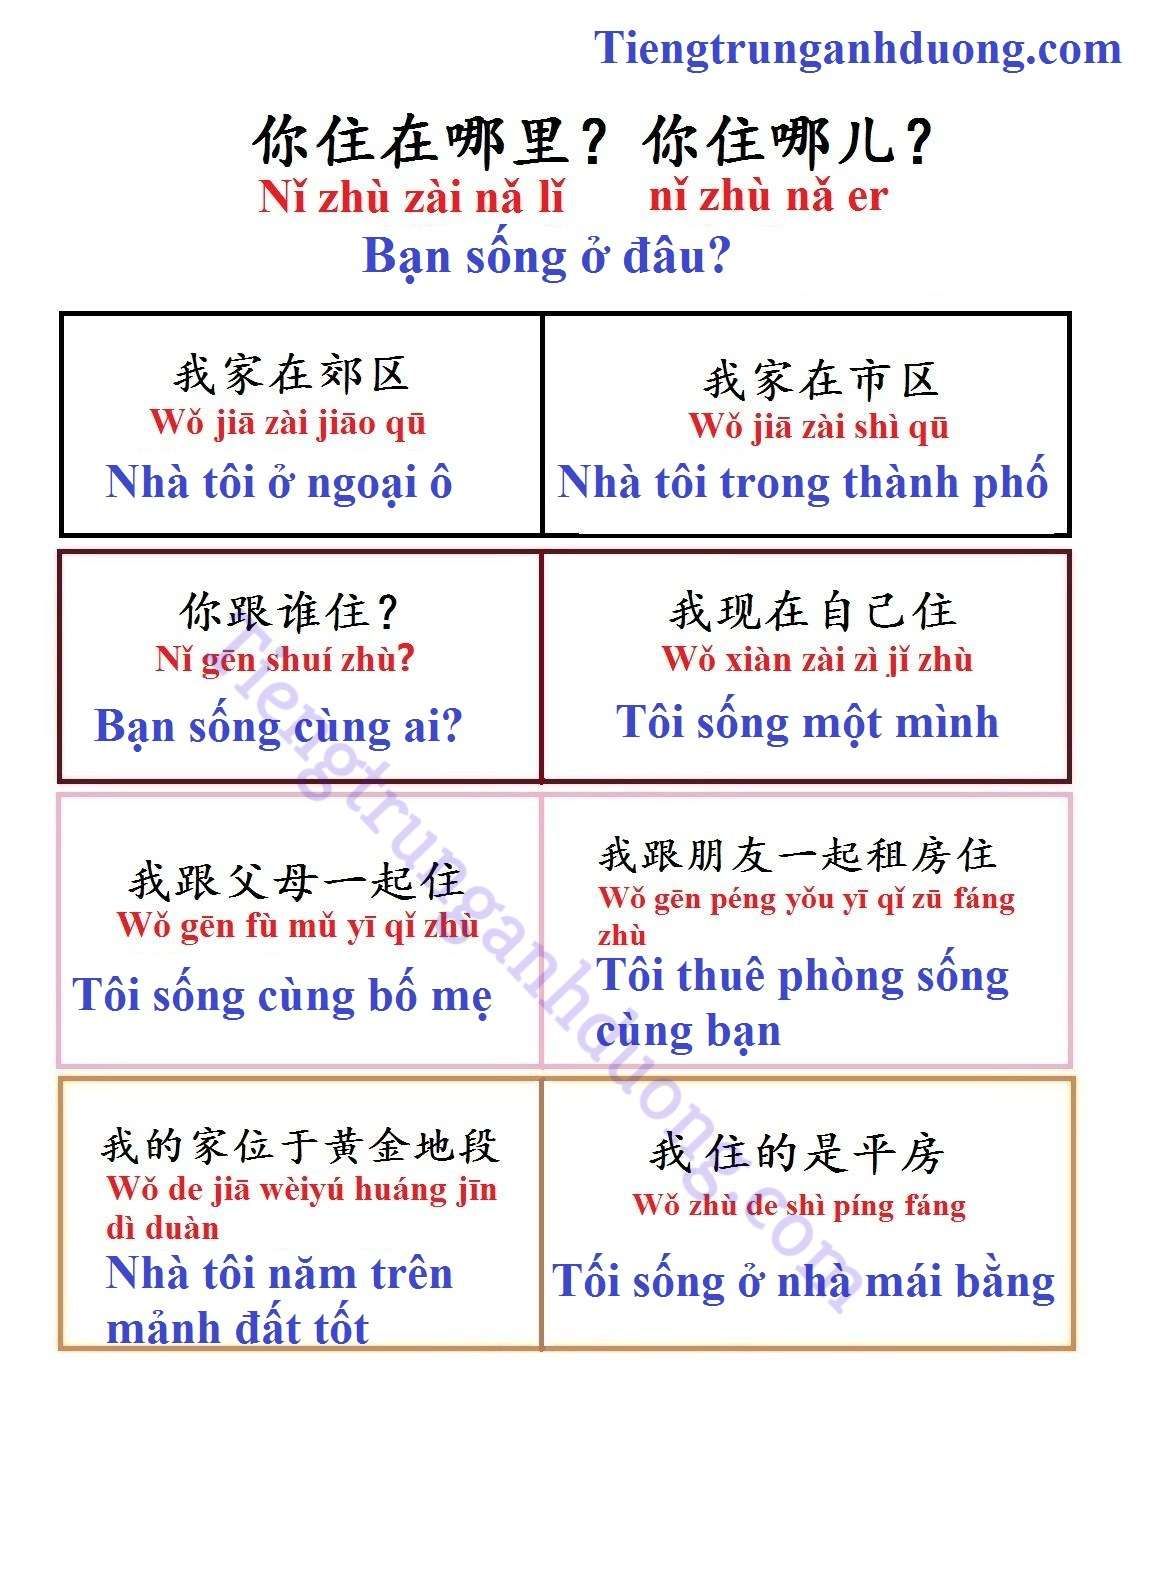 Những điều cần biết khi học tiếng Trung - Ảnh 4